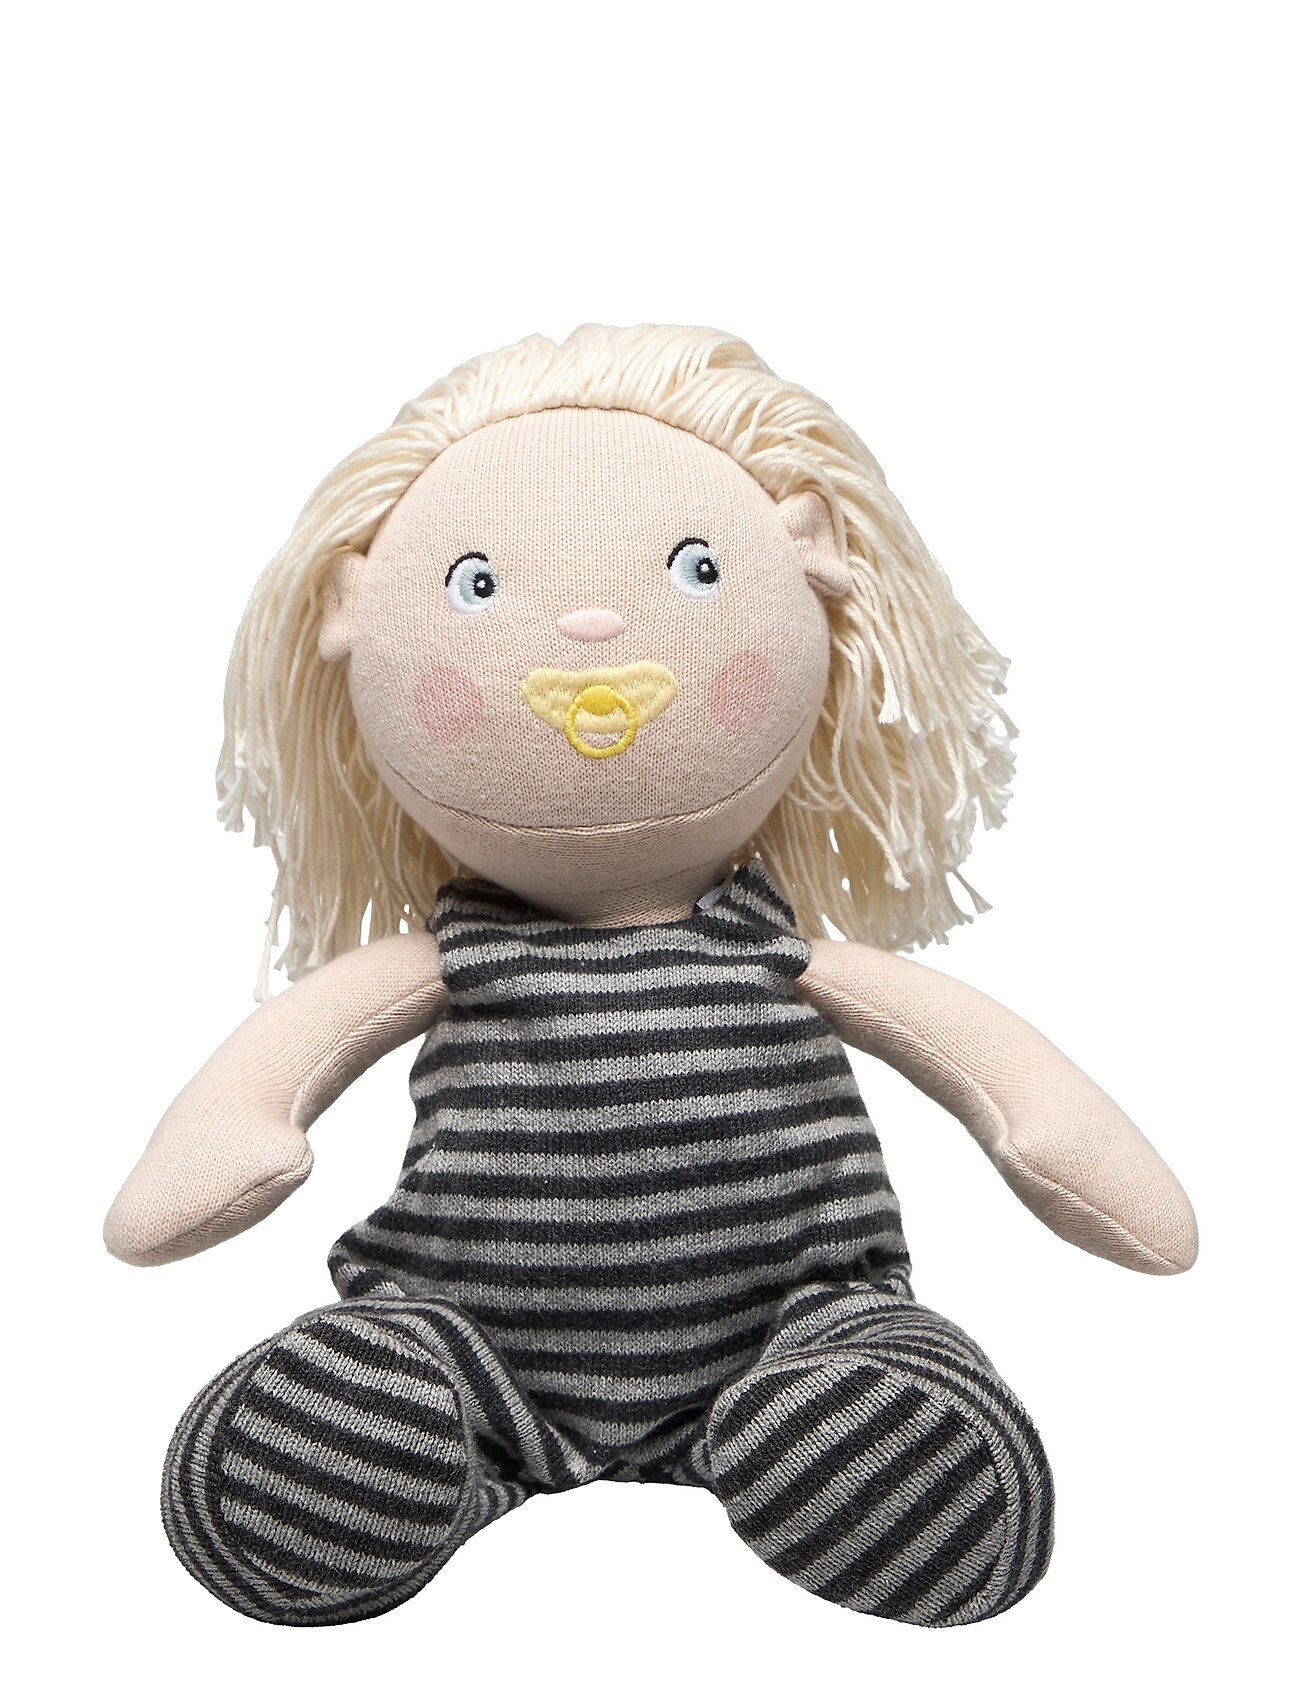 Smallstuff Doll, Charlie, 30 Cm Toys Dolls & Accessories Dolls Svart Smallstuff